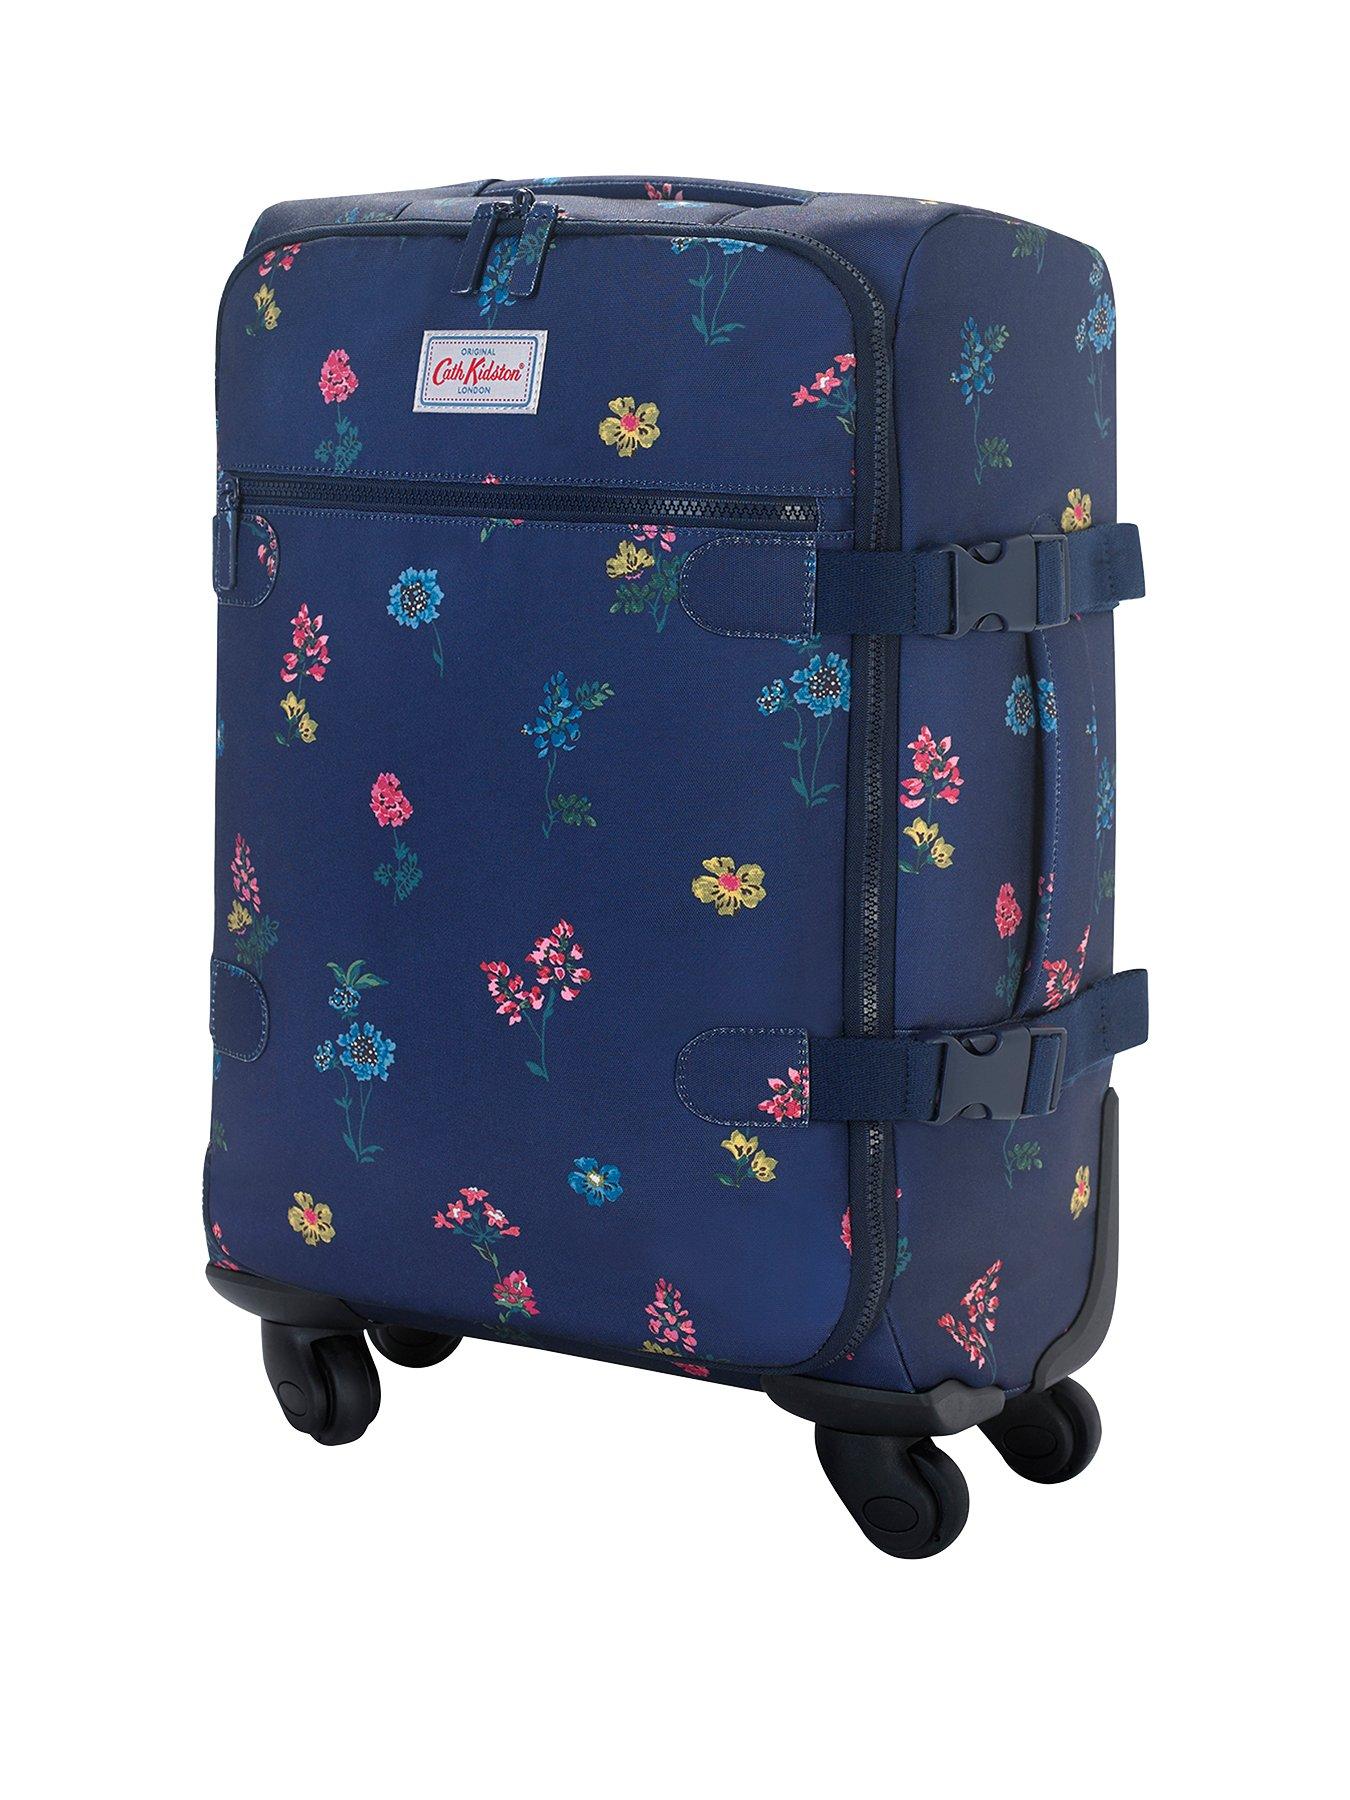 cath kidston luggage